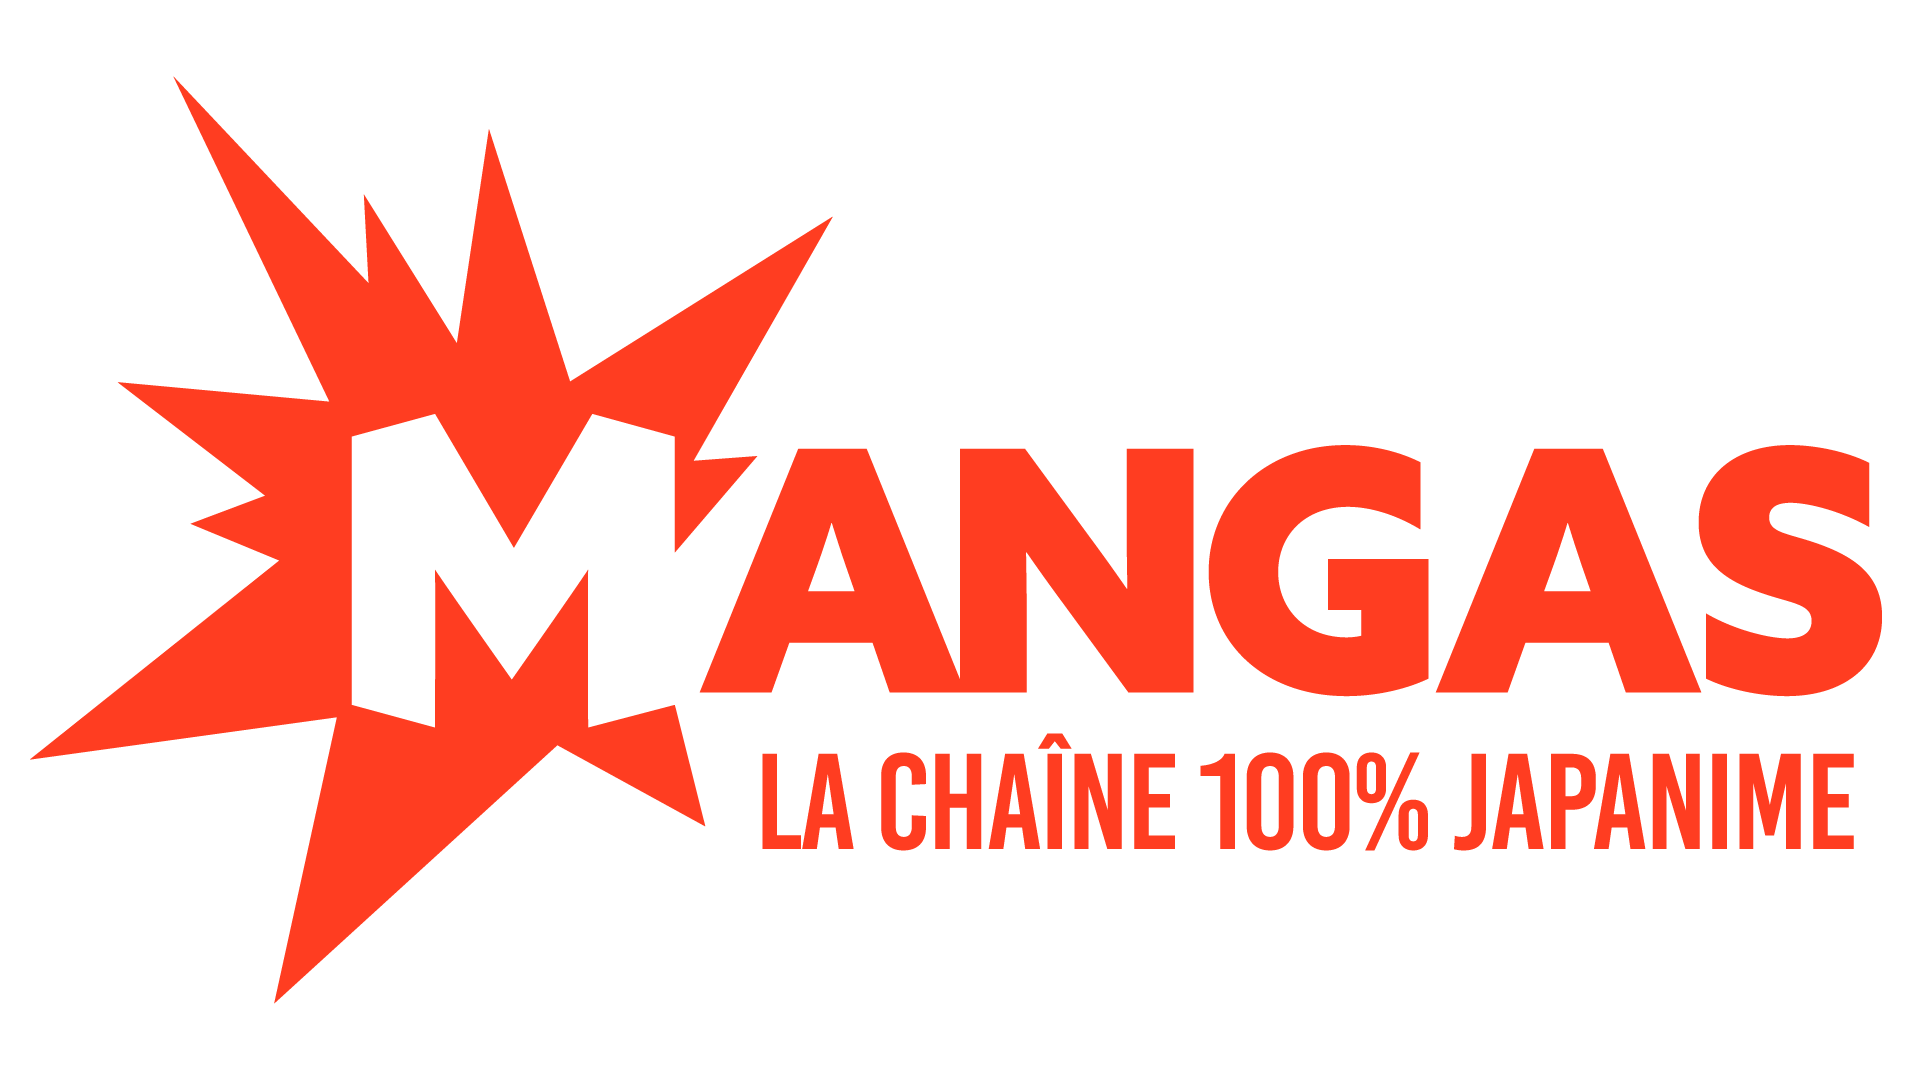 Mangas ist der einzige Kanal, der sich zu 100 % den Manga-Figuren widmet. Ein Muss für Fans von japanischen Zeichentrickfilmen und Kultserien.